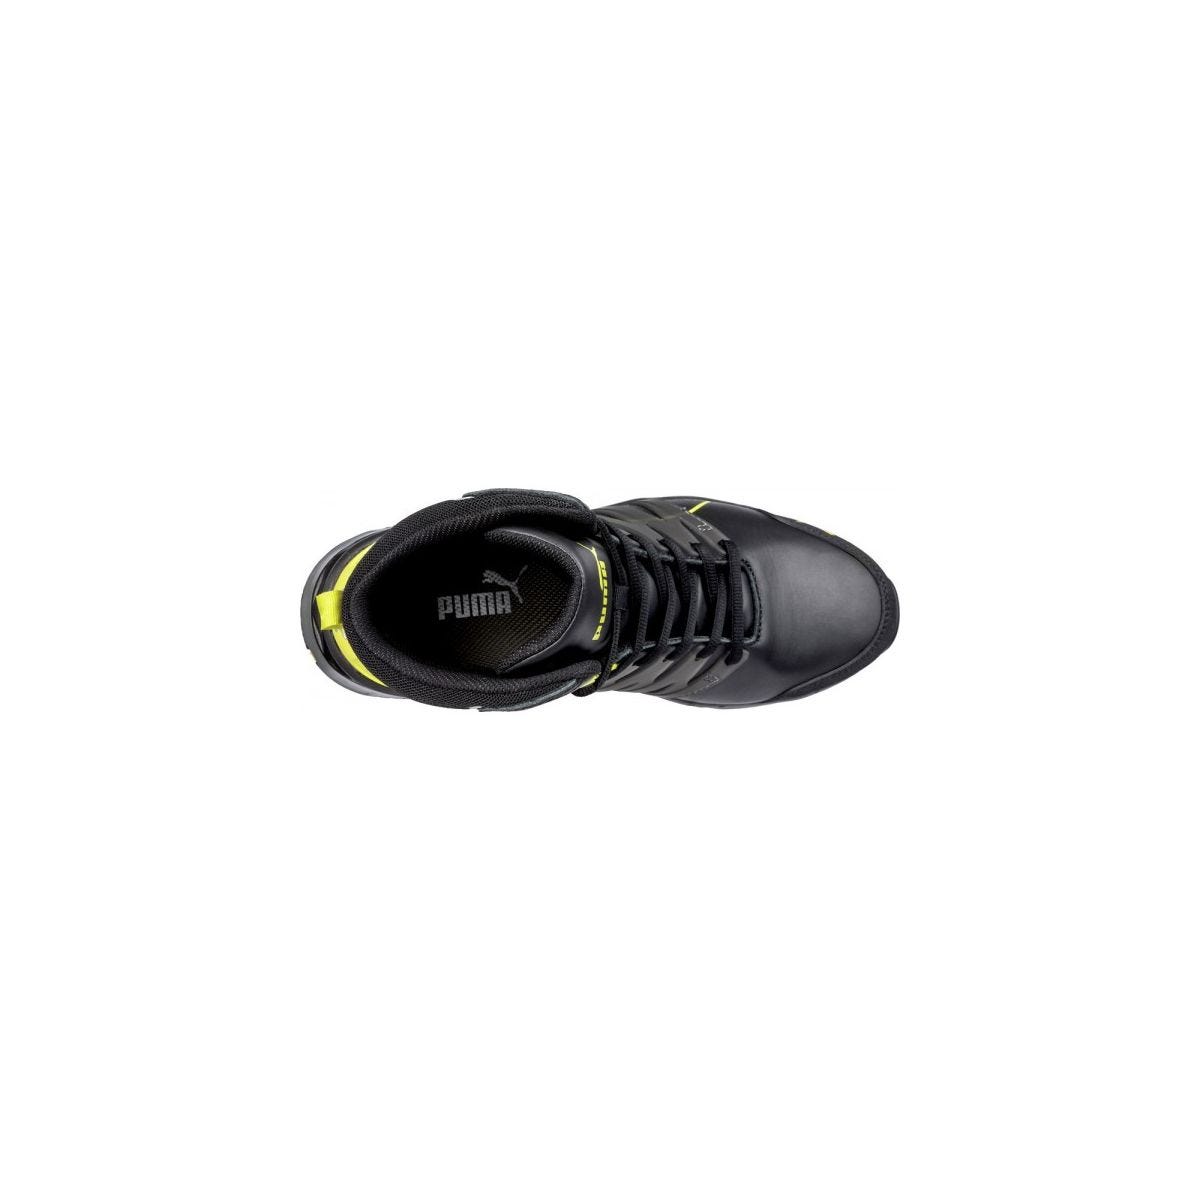 Chaussures de sécurité Velocity 2.0 YELLOW MID S3 - Puma - Taille 42 3